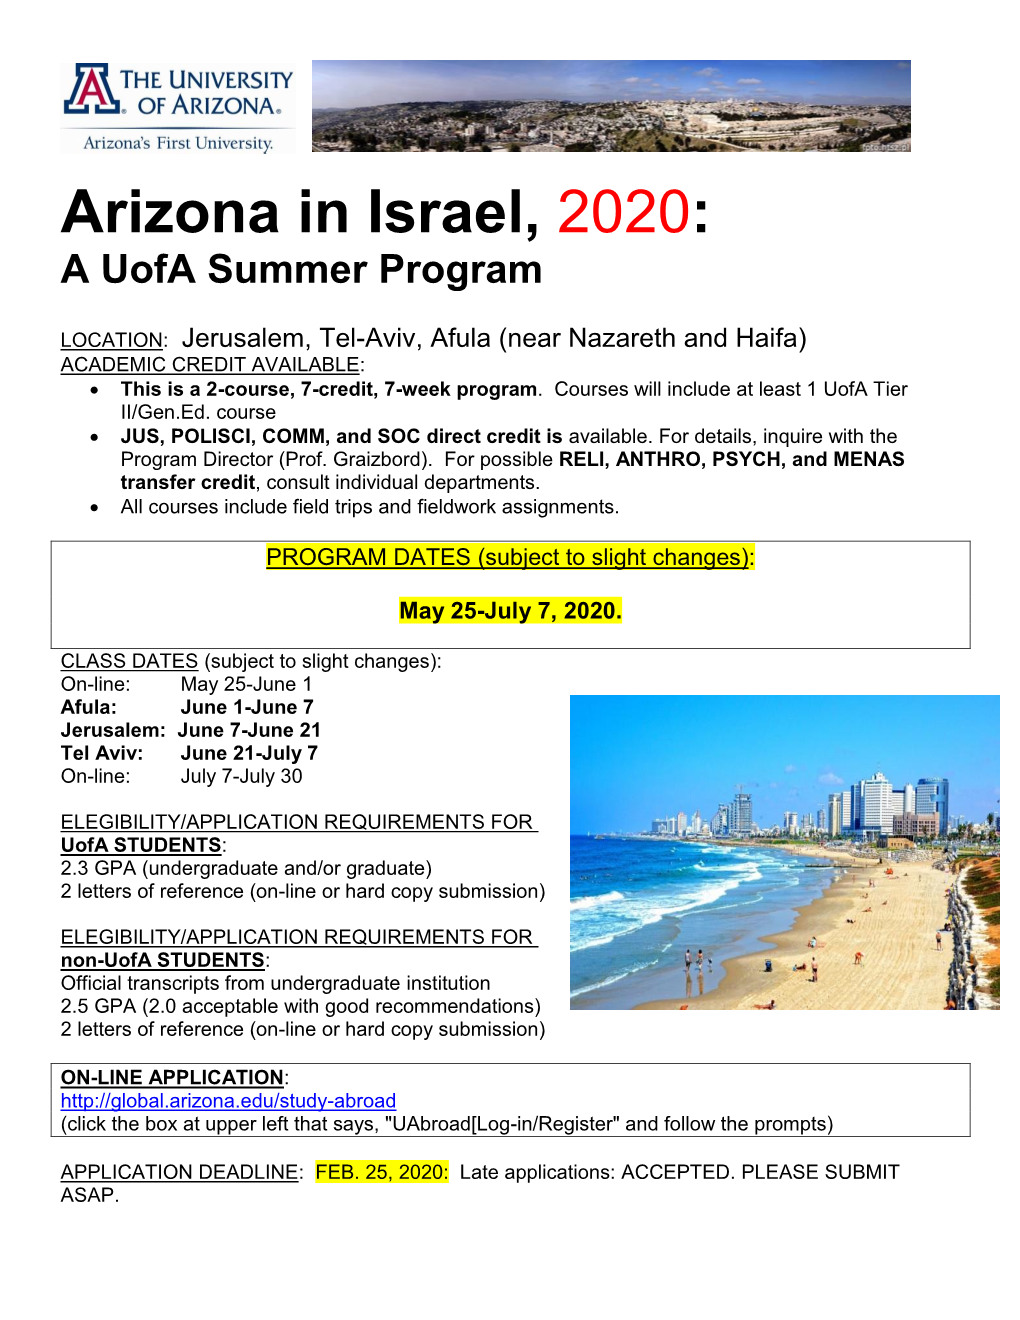 Arizona in Israel, 2020: a Uofa Summer Program